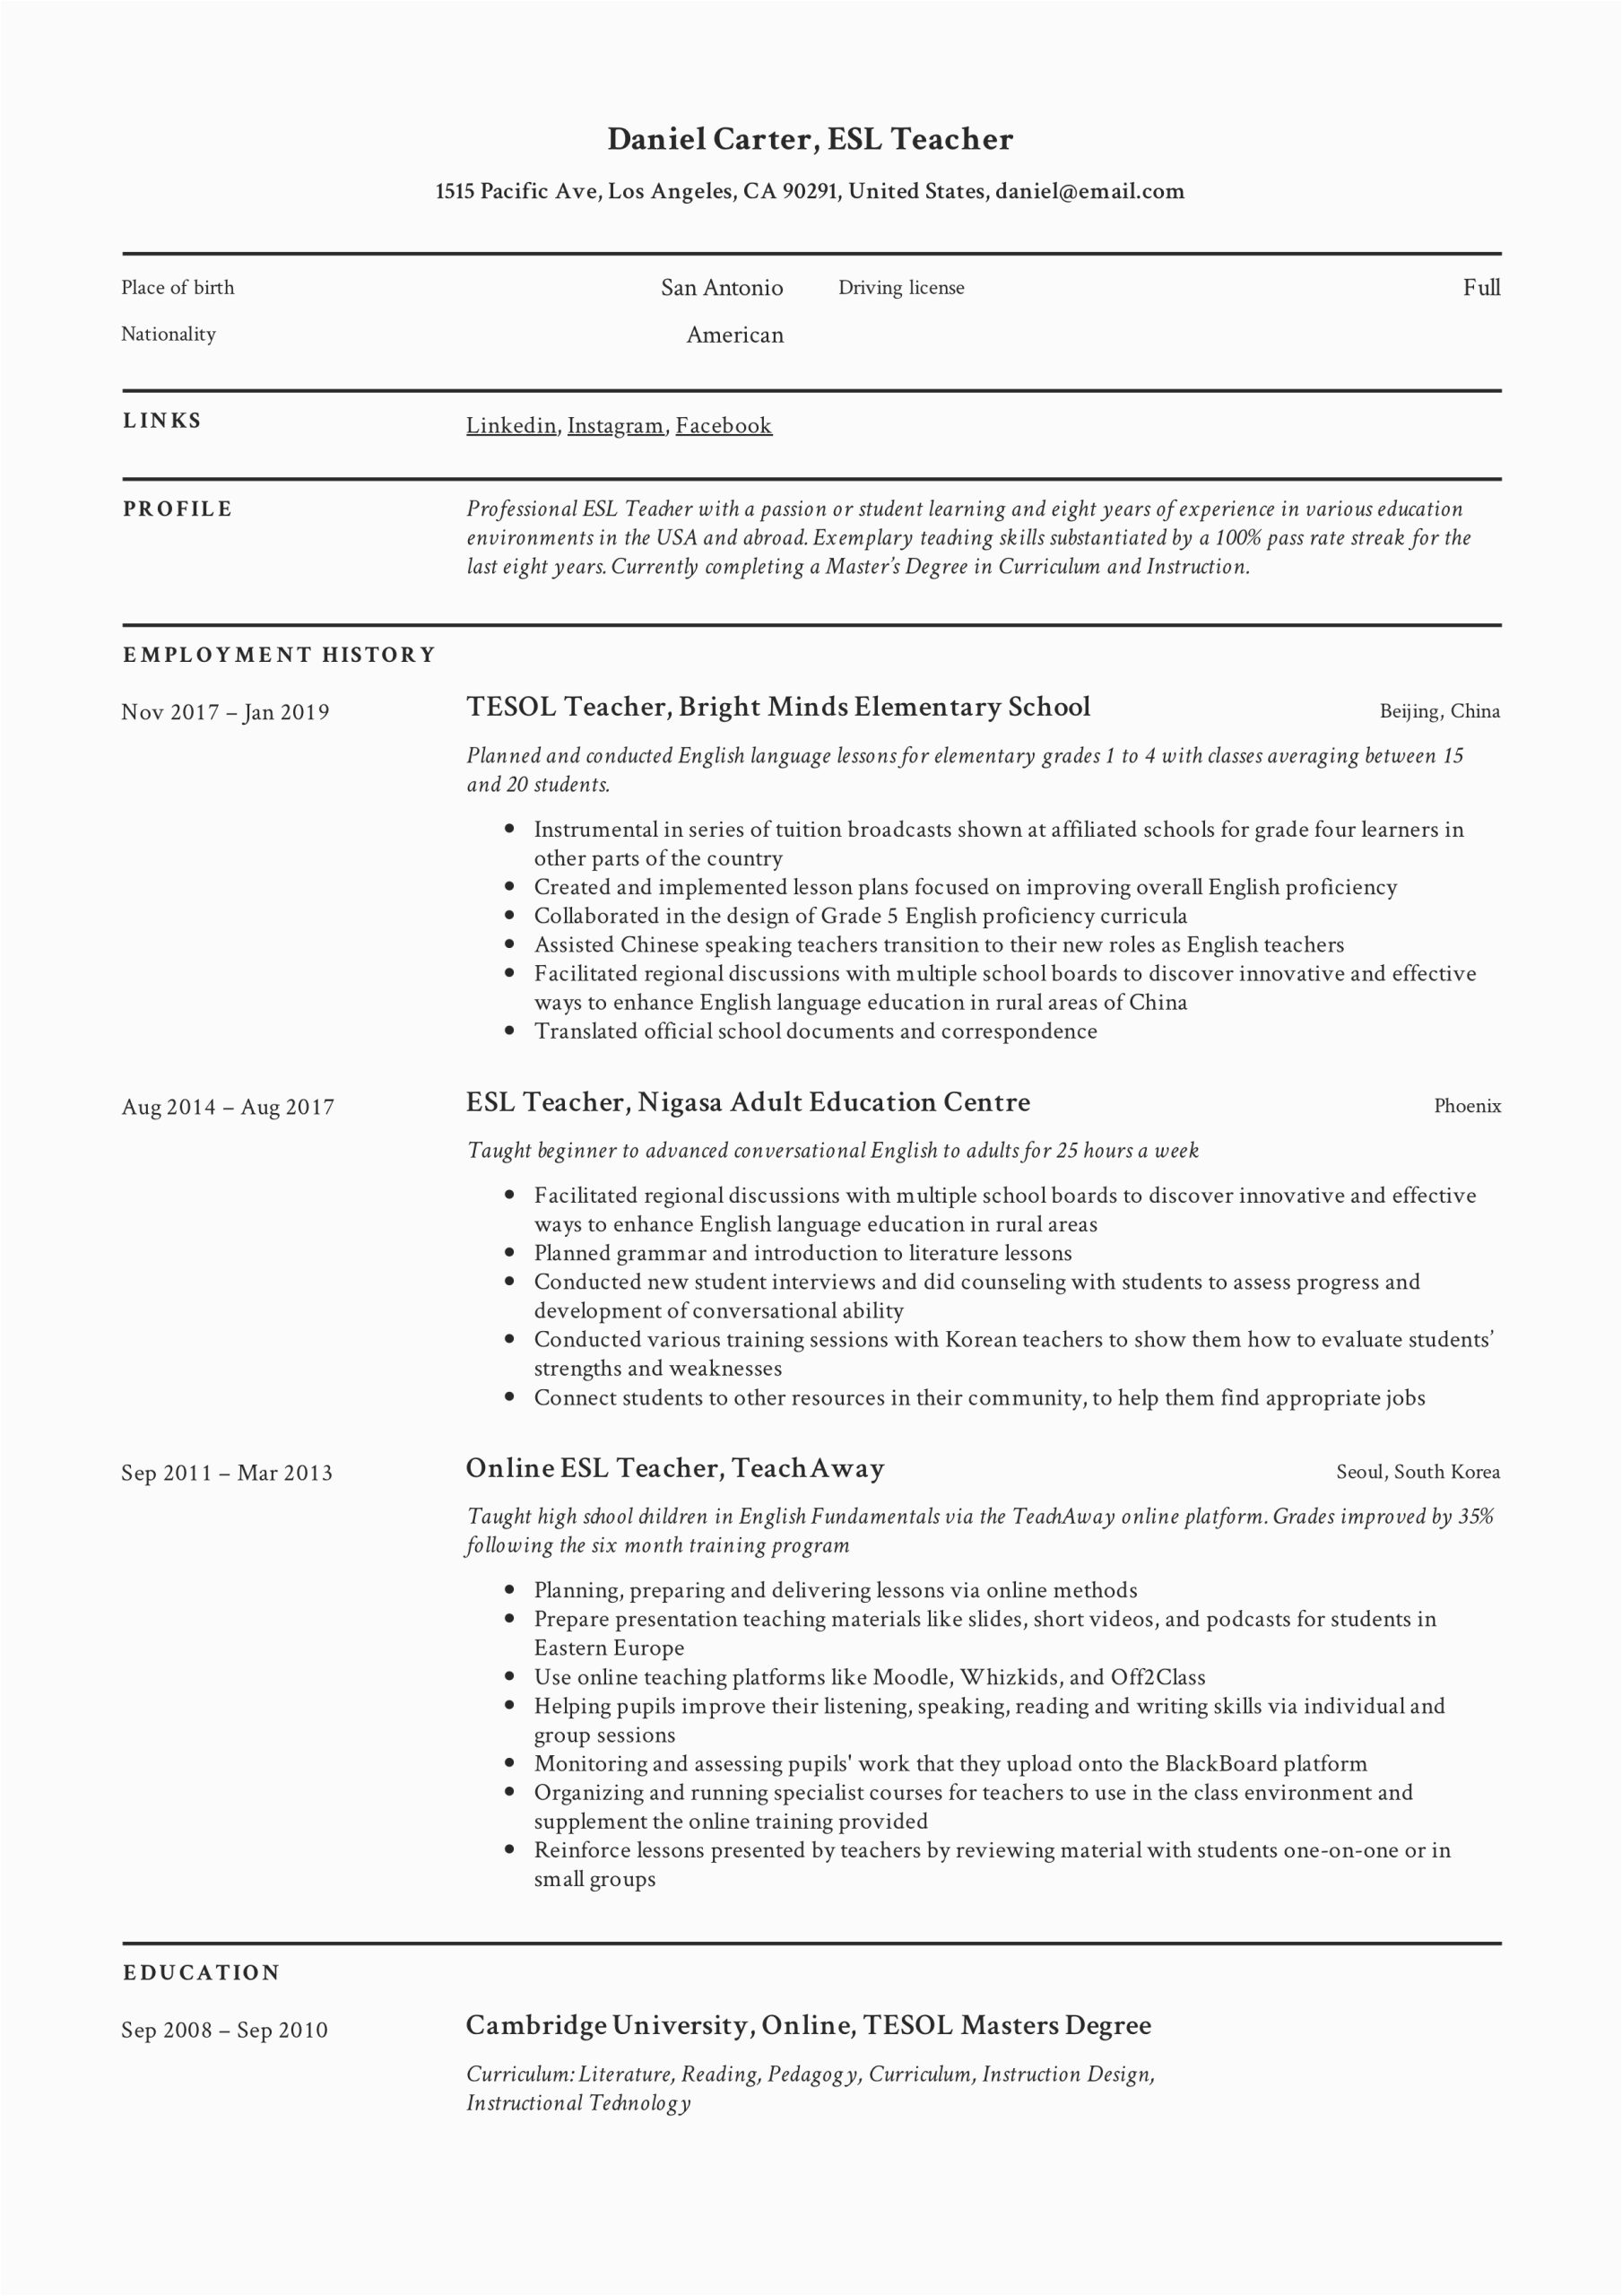 Sample Resume for Online Esl Teacher Esl Teacher Resume Sample & Writing Guide